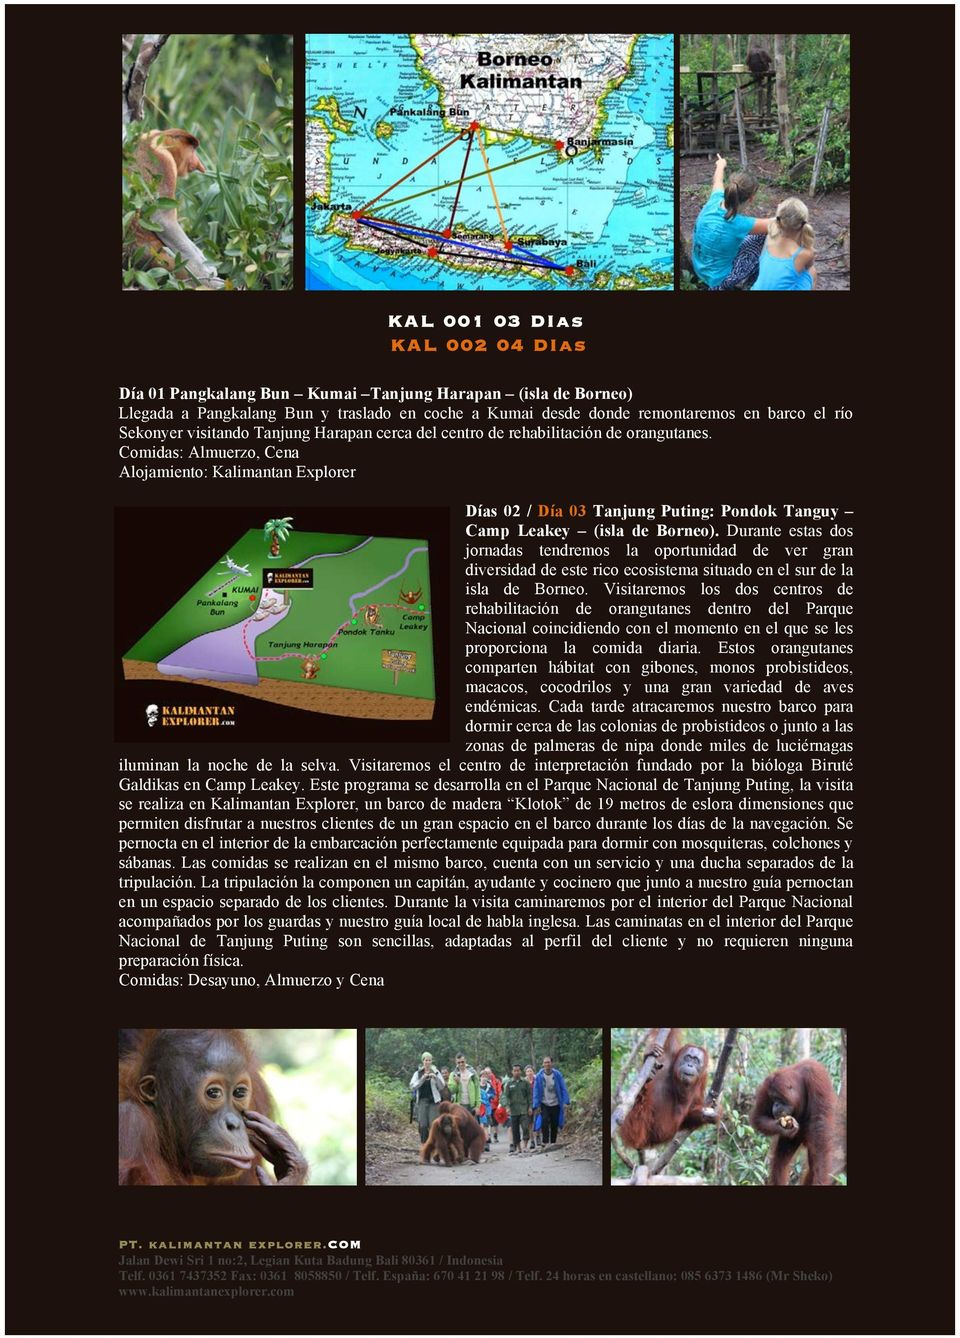 Comidas: Almuerzo, Cena Alojamiento: Kalimantan Explorer Días 02 / Día 03 Tanjung Puting: Pondok Tanguy Camp Leakey (isla de Borneo).